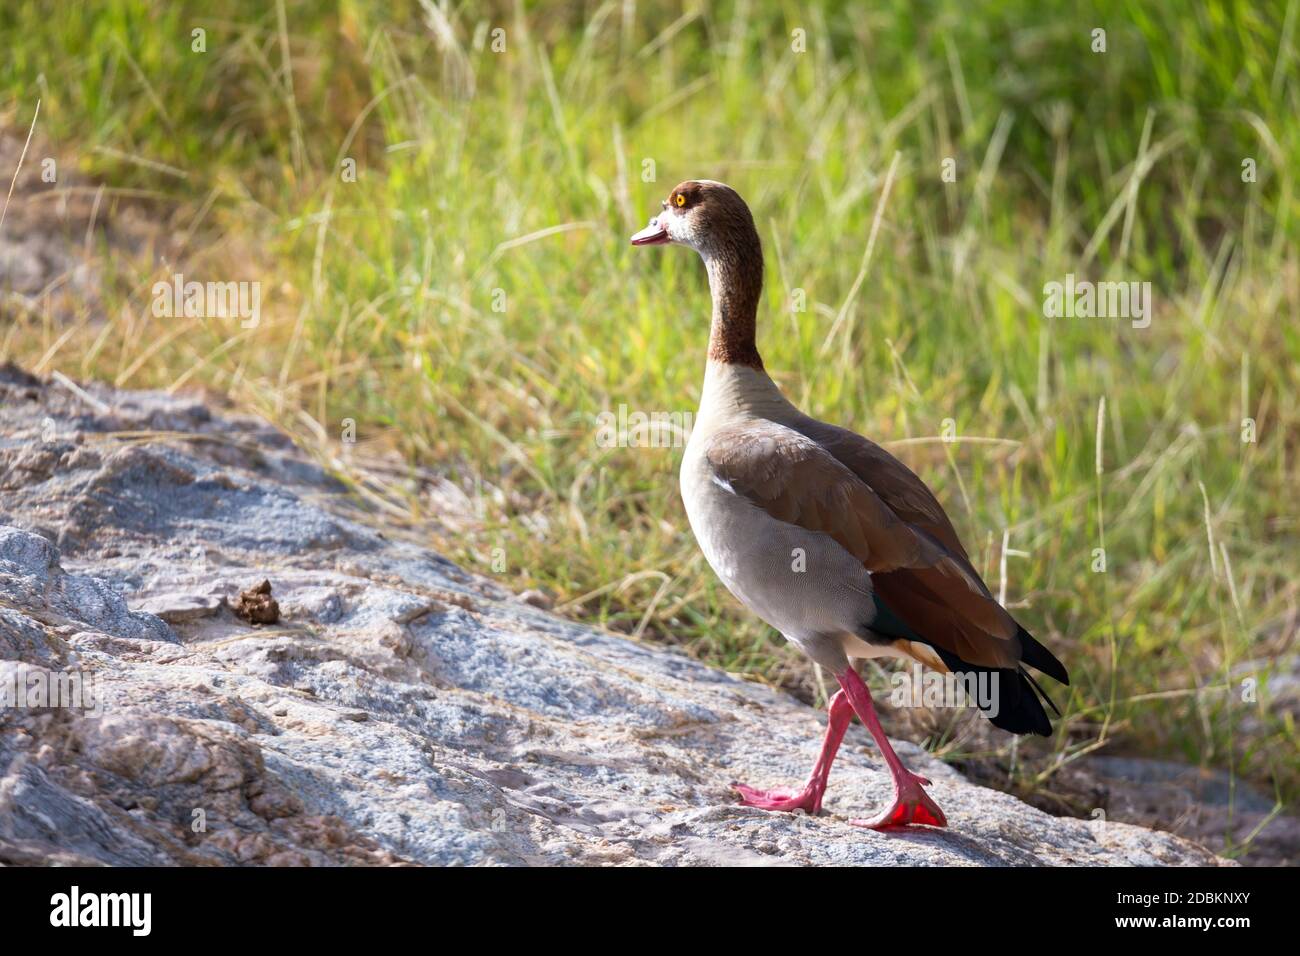 Un oiseau natif très coloré dans le paysage du Kenya Banque D'Images